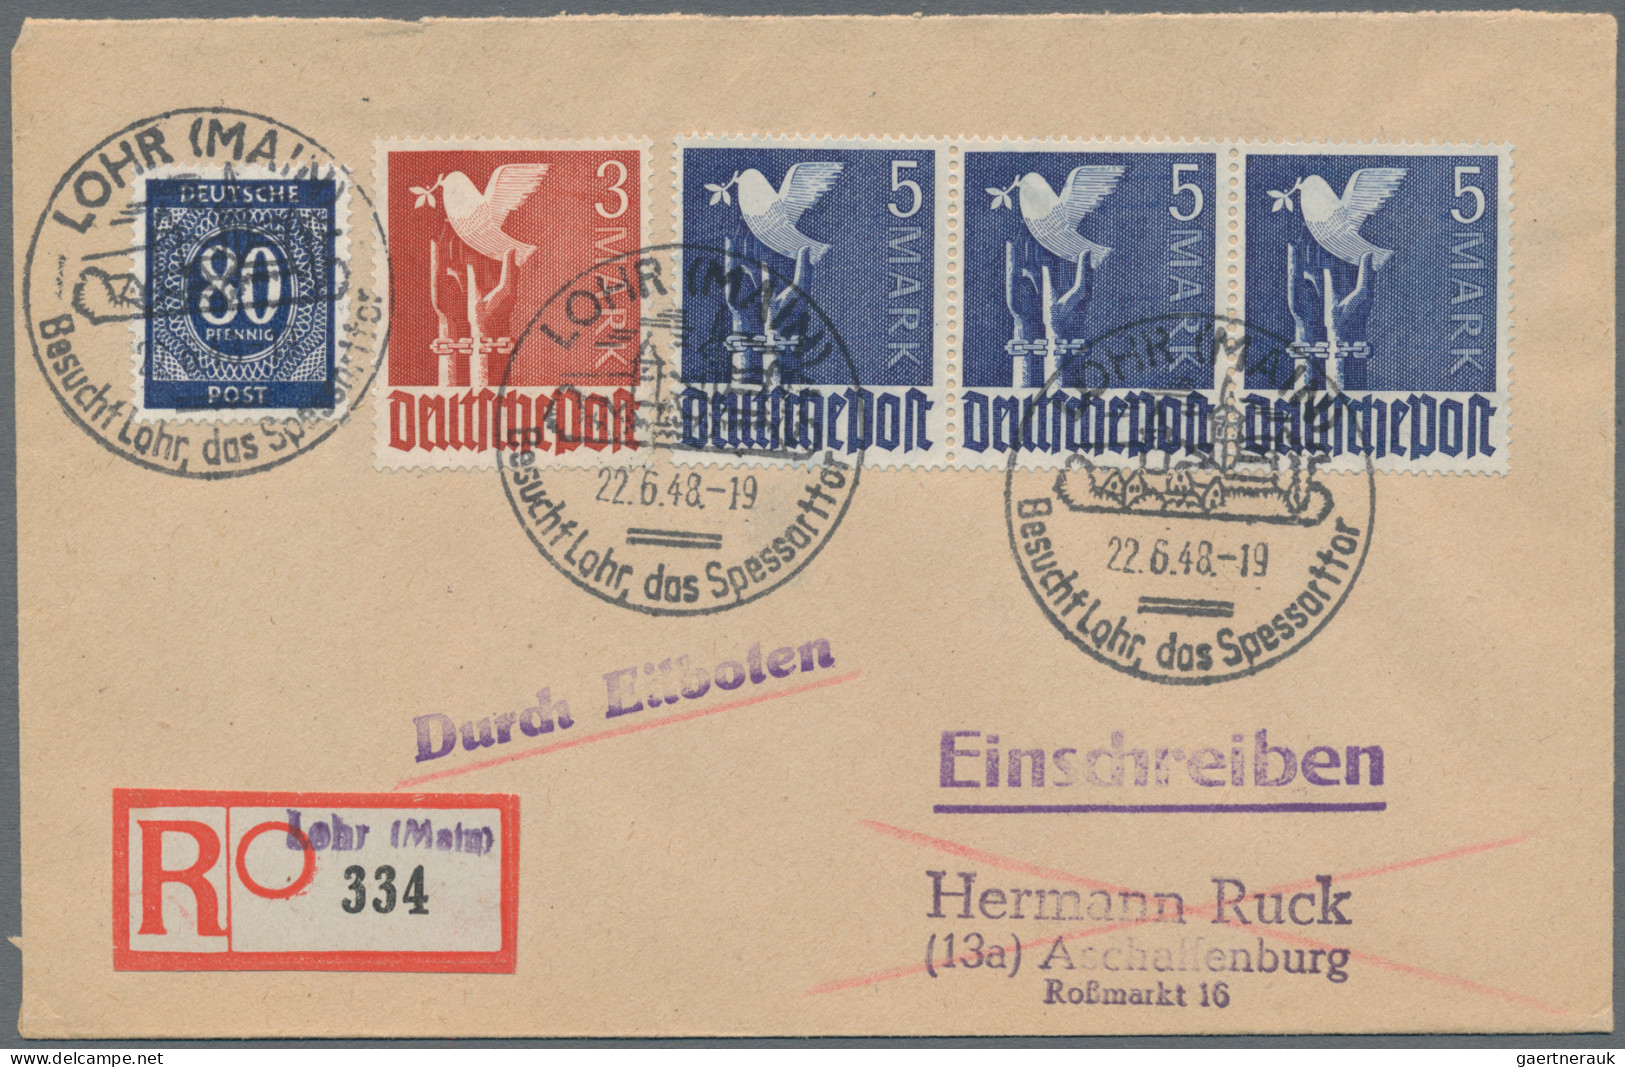 Deutschland ab 1945 - Gebühr Bezahlt: 1947-1948, inhaltsreiche Briefsammlung mit